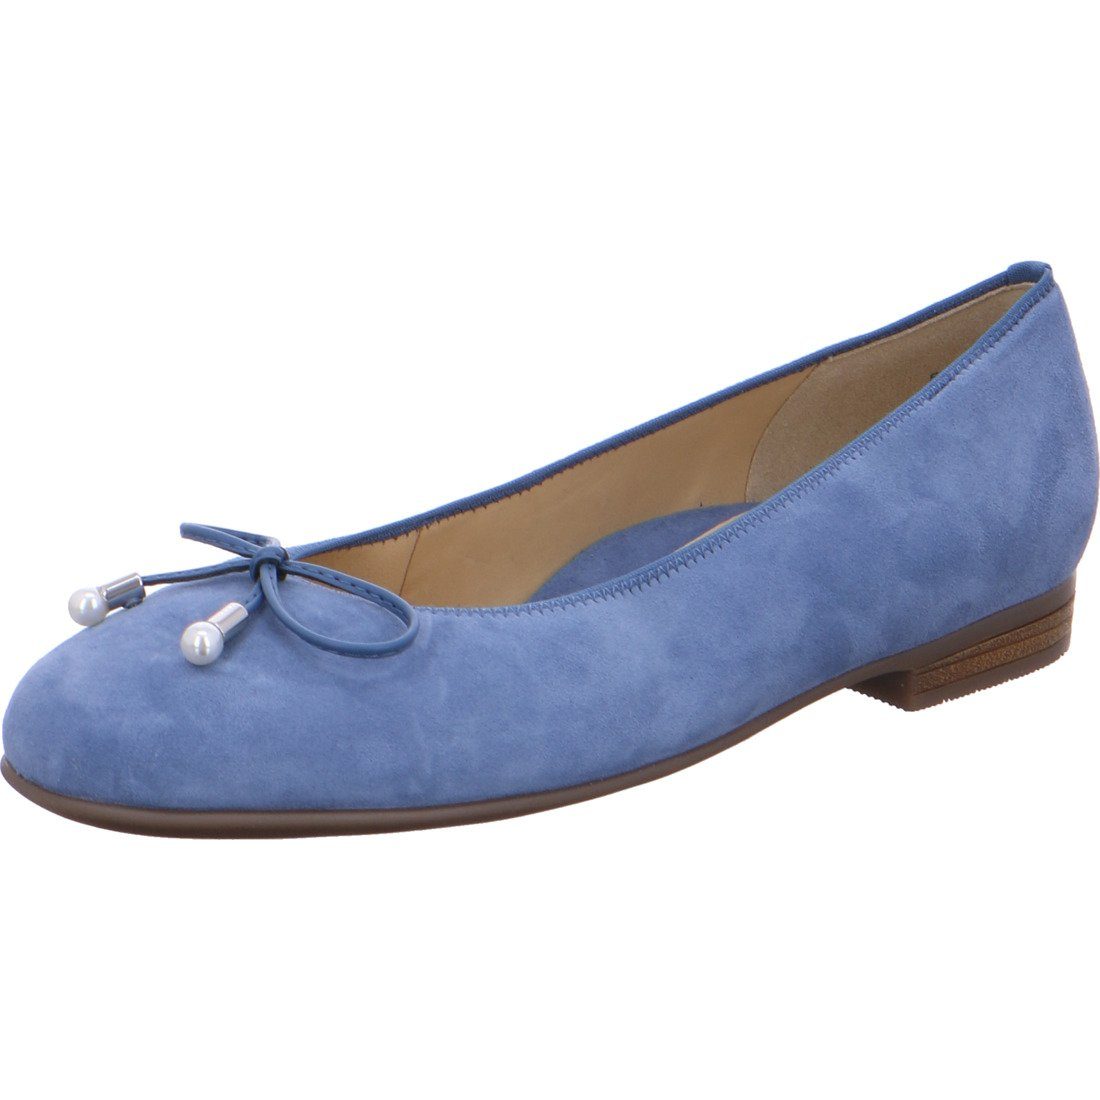 Sardinia blau Ballerina Schuhe, Ara Ara Damen 048108 Rauleder - Ballerina